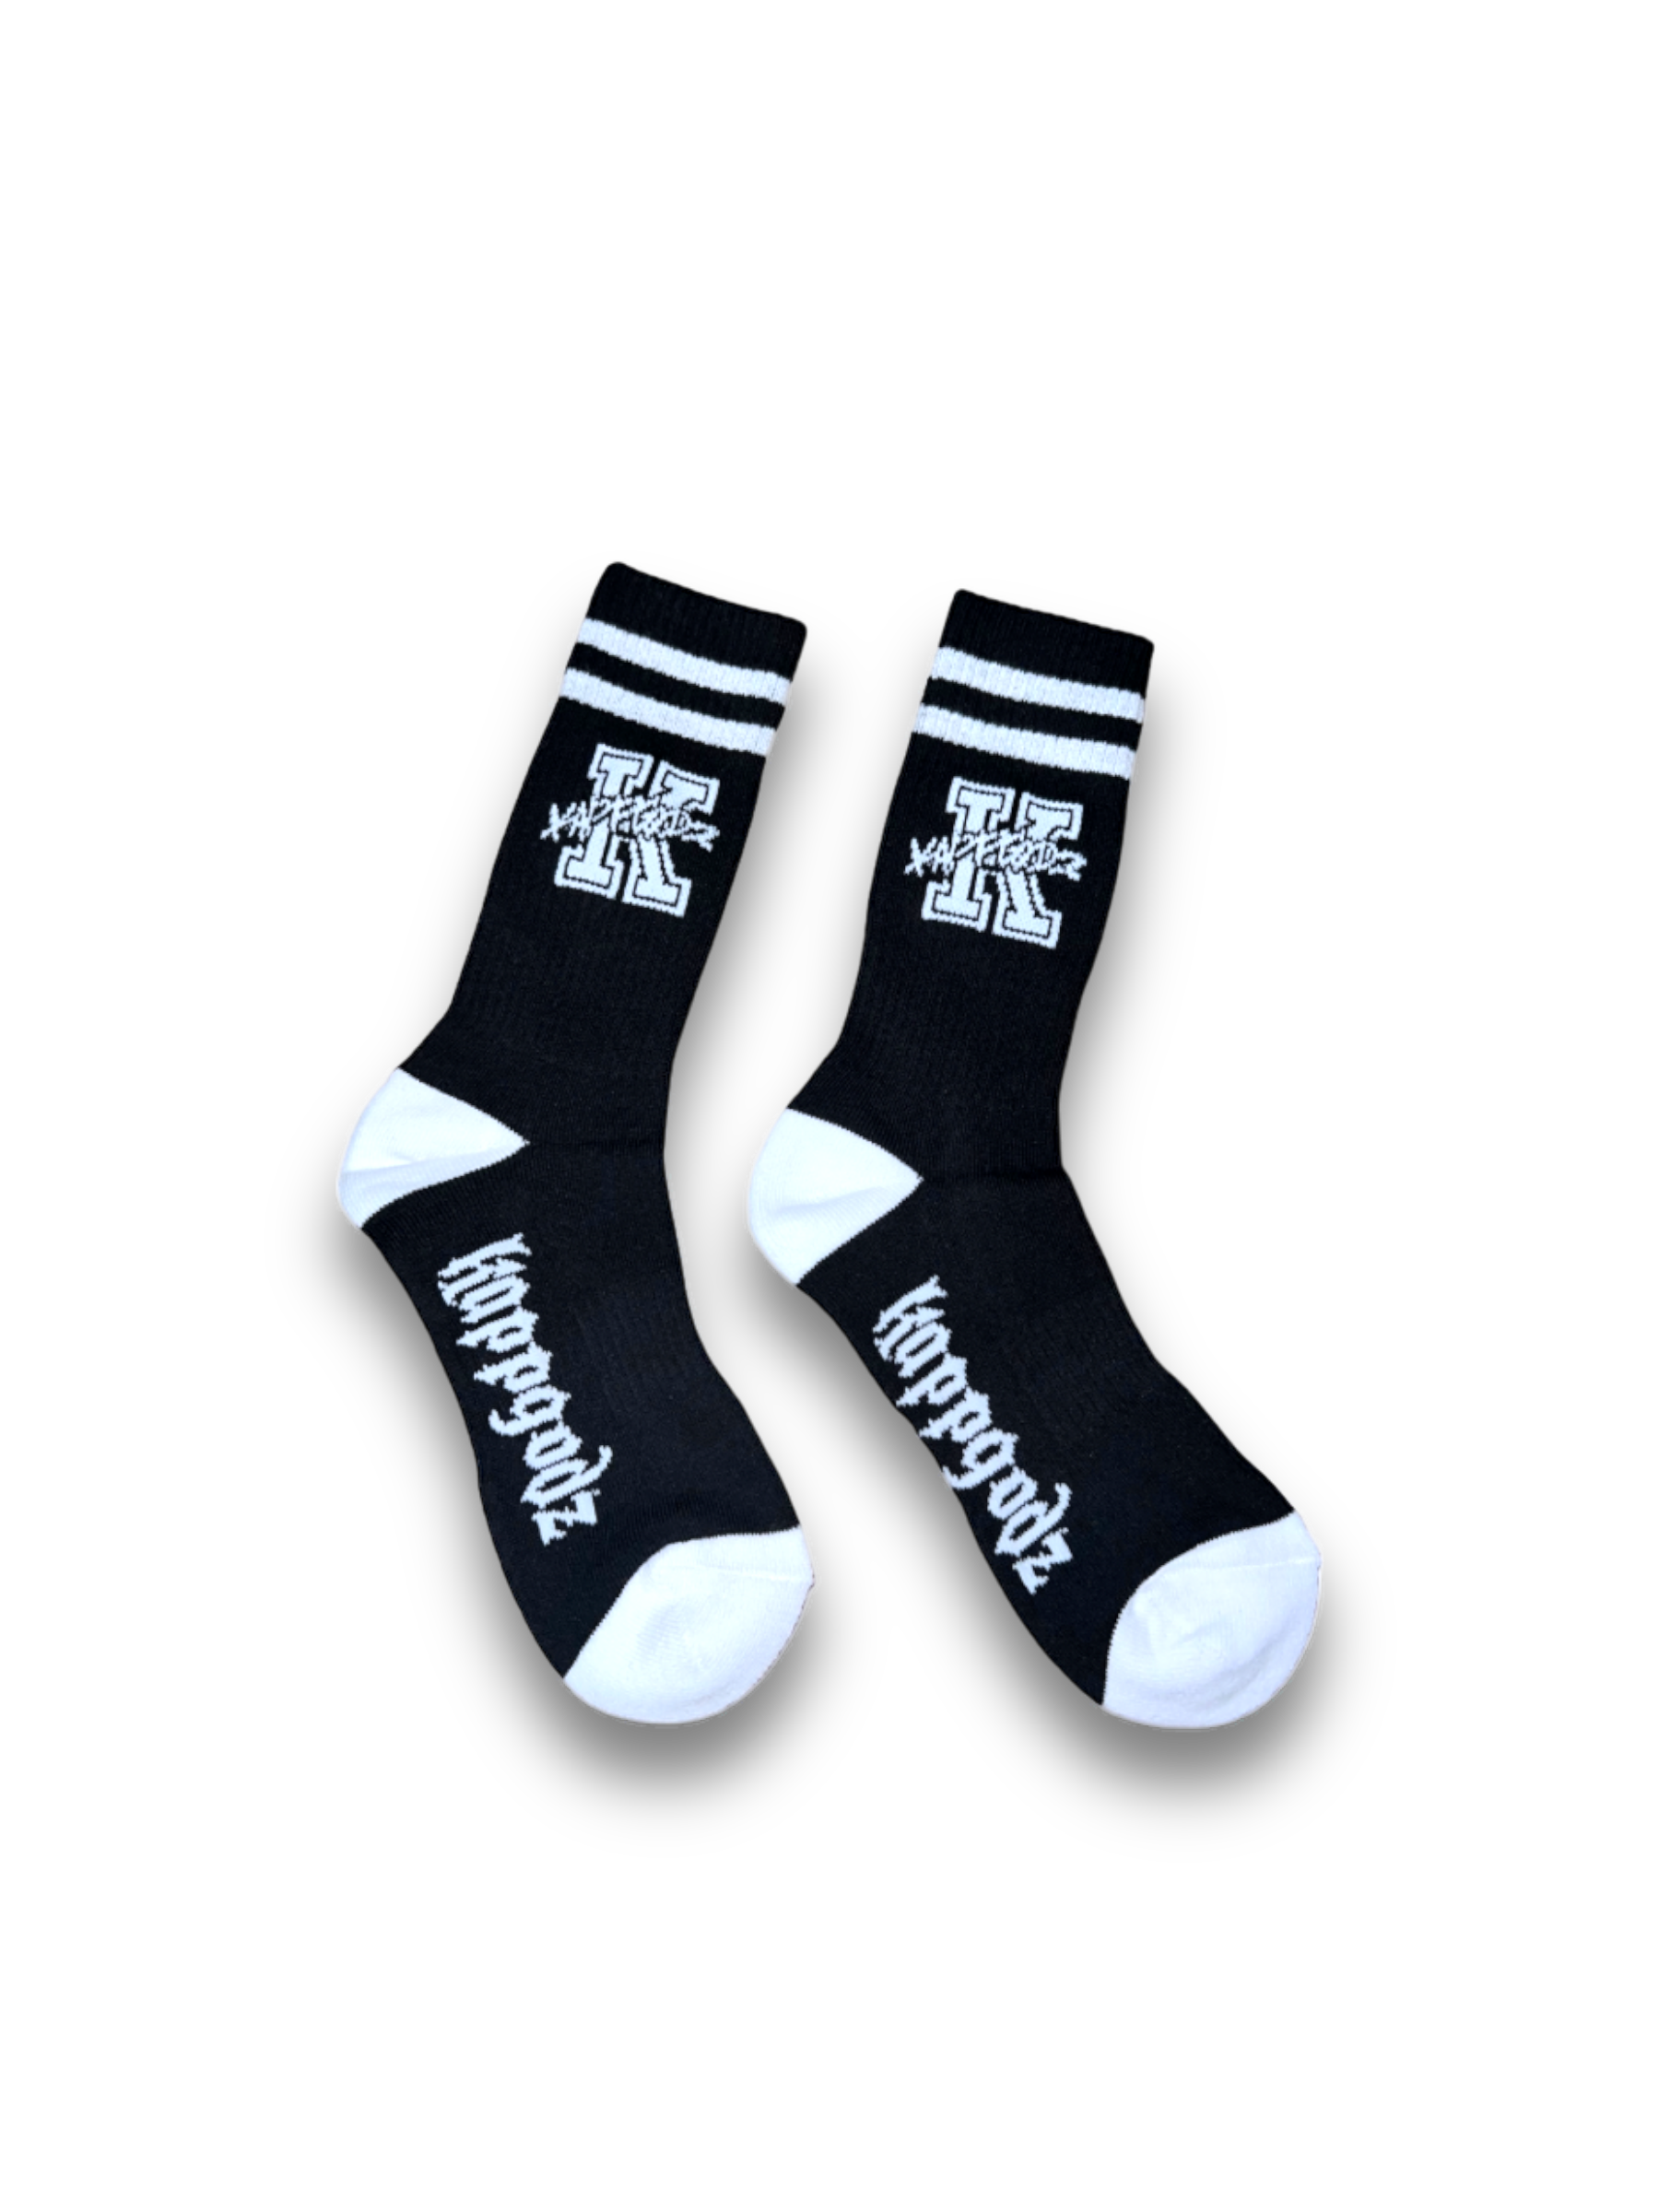 Retro KappGodz Socks - White - KappGodz Apparel